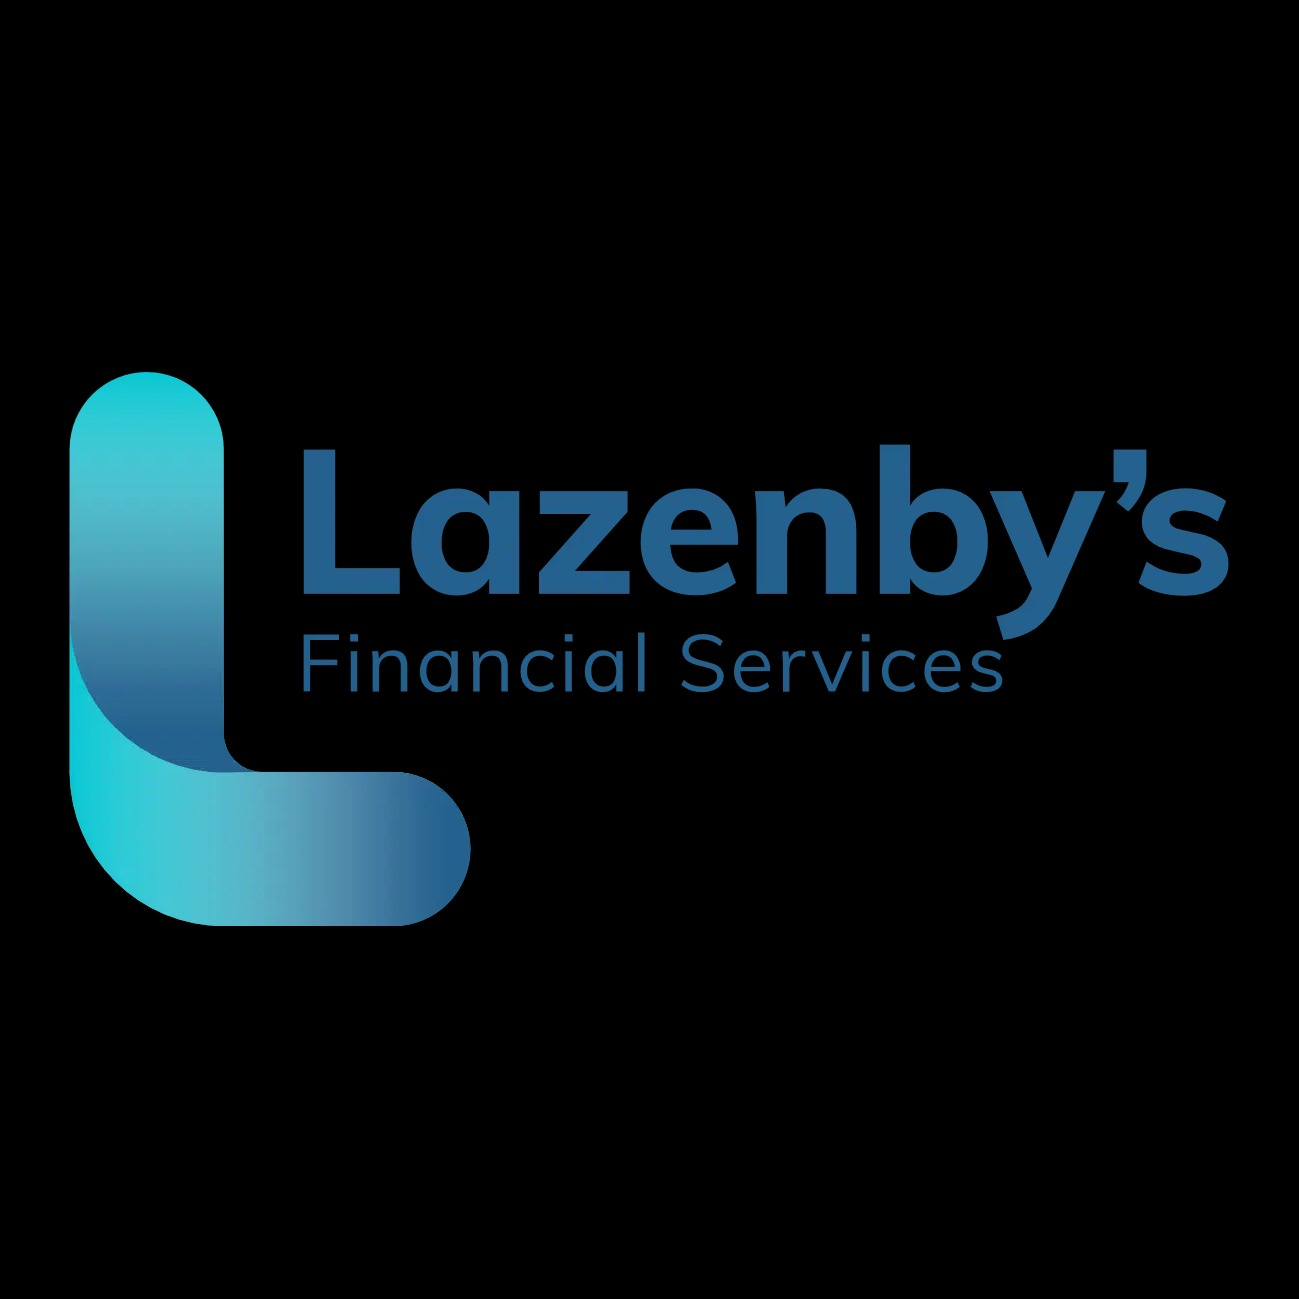 Lazenby's Financial Services - Leeds, West Yorkshire LS16 6QE - 01133 220700 | ShowMeLocal.com